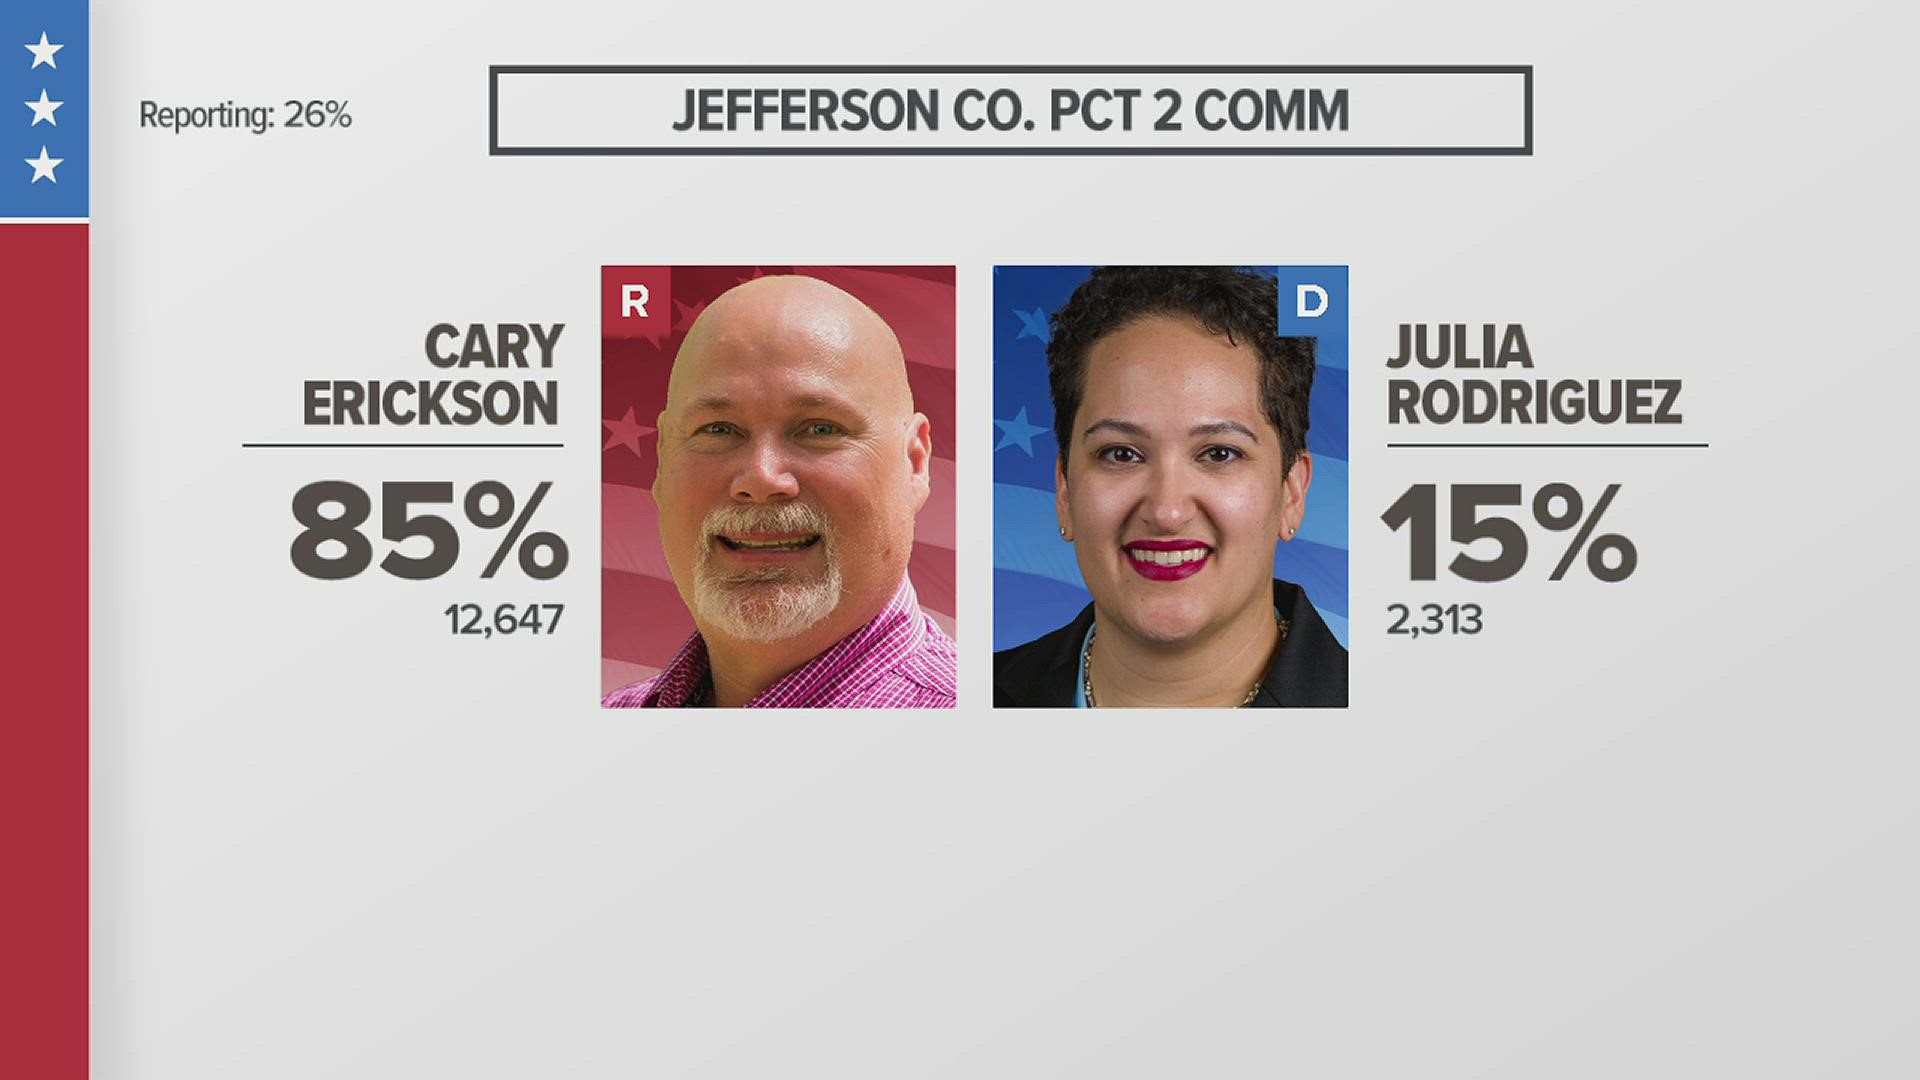 Erickson won 85% of the vote.